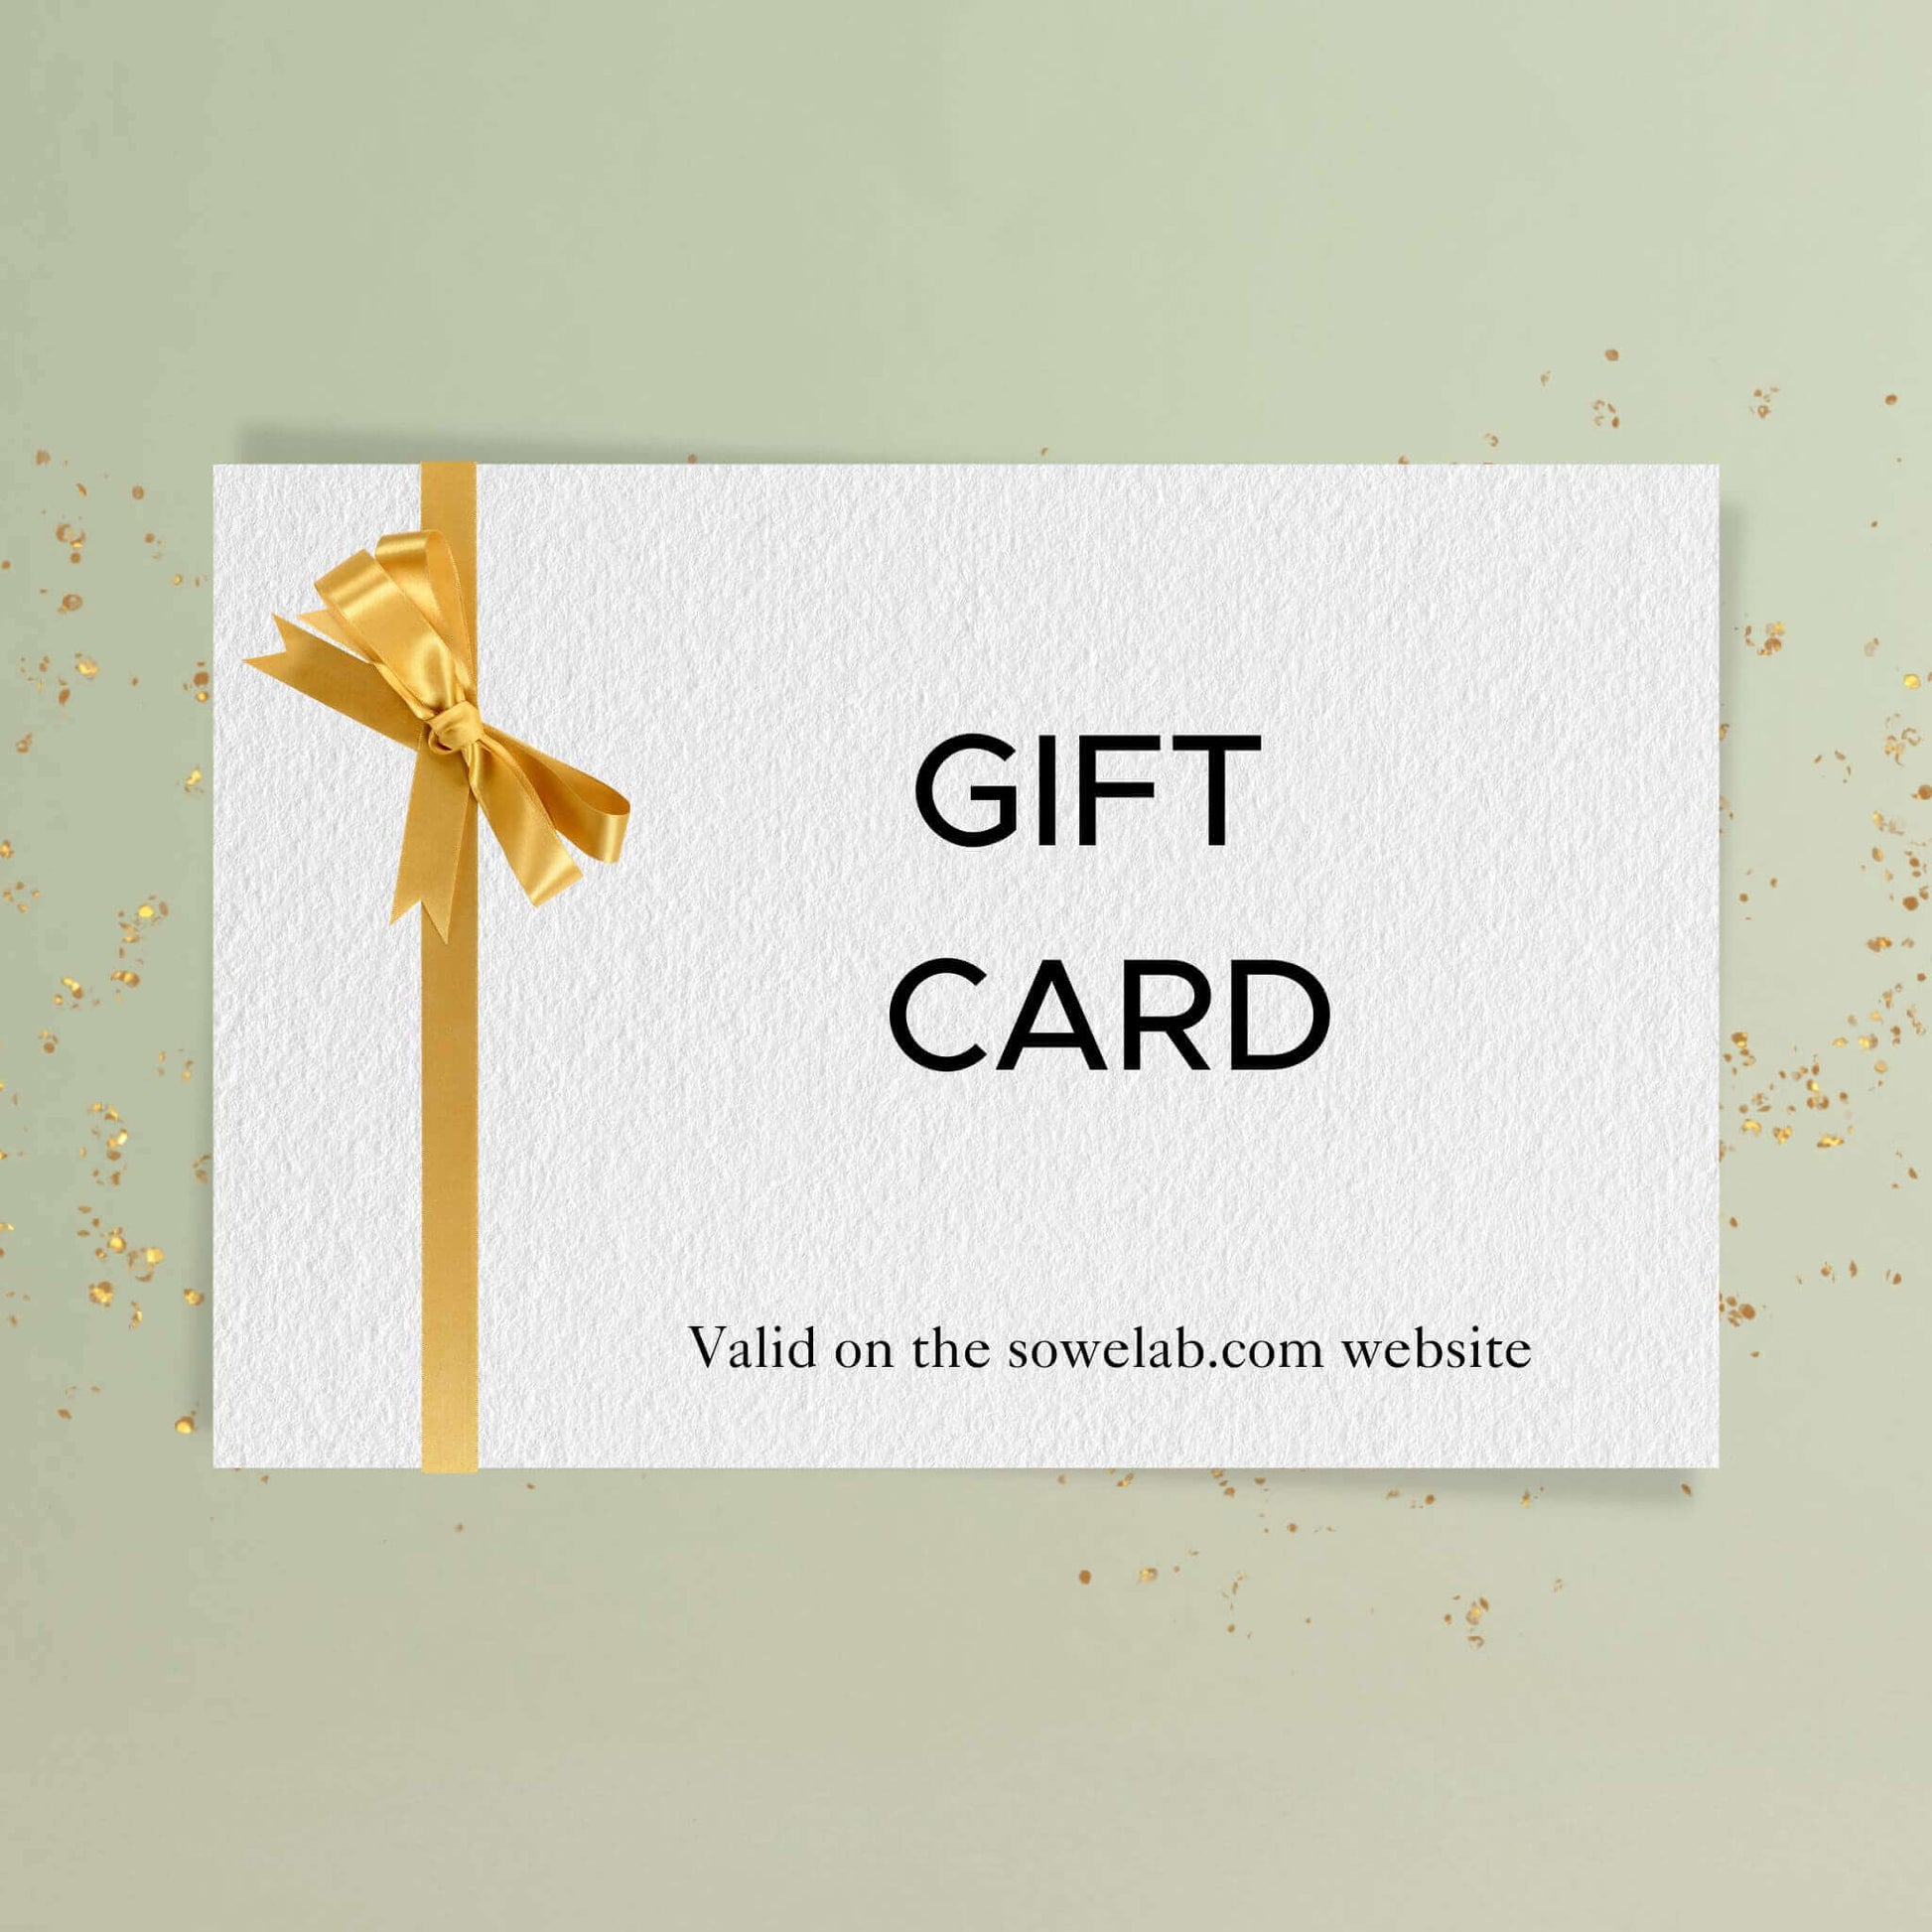 Carte cadeau - Gift card - Tarjeta regalo - Cartão-presente